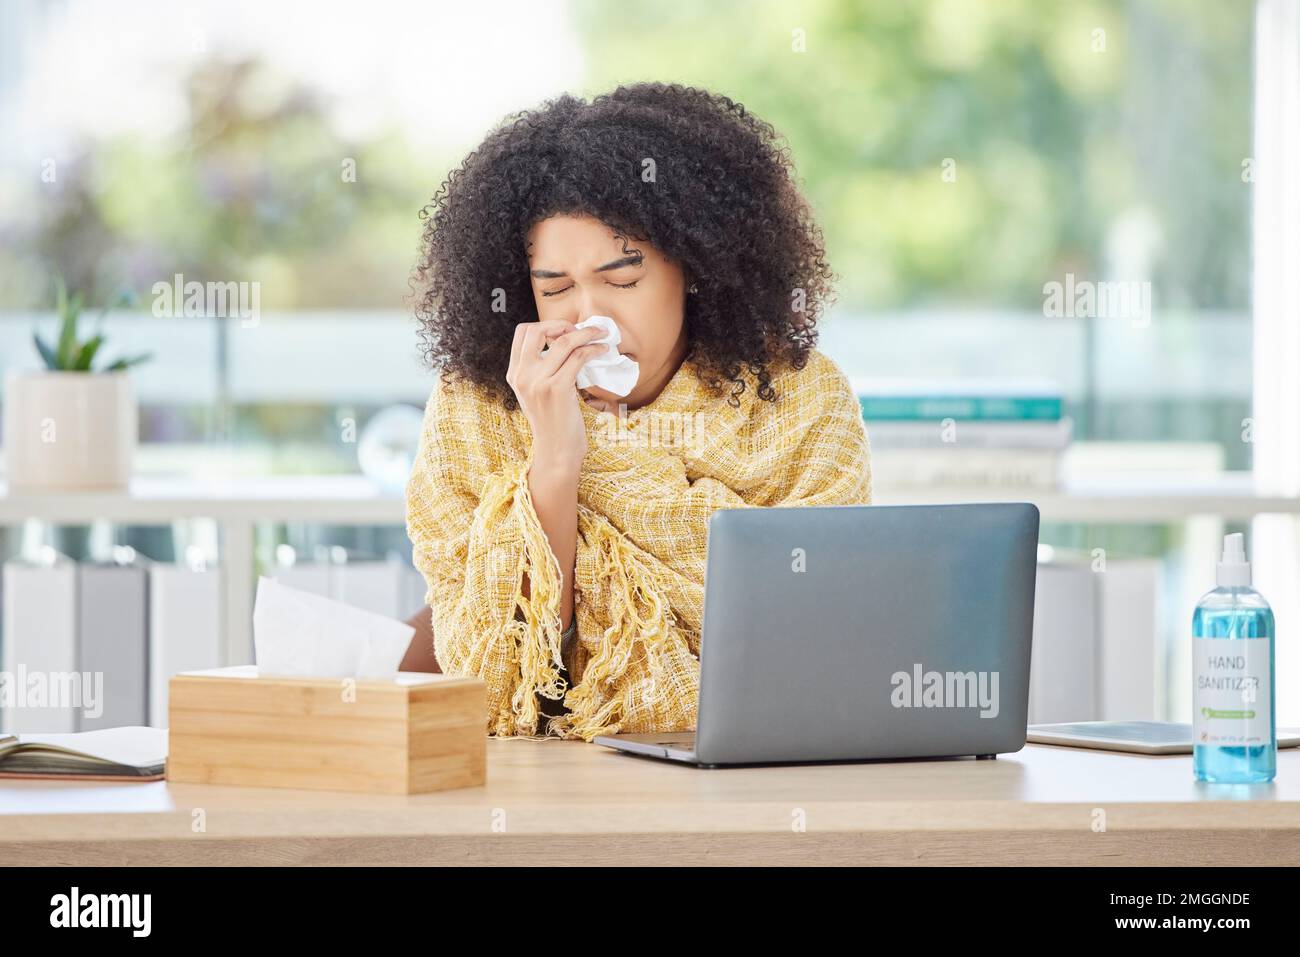 Krank, Laptop und Nasenbluten mit einer Geschäftsfrau, die ein Taschentuch benutzt, während sie in ihrem Büro arbeitet. Computer, schwul und niesen mit einer jungen Frau Stockfoto